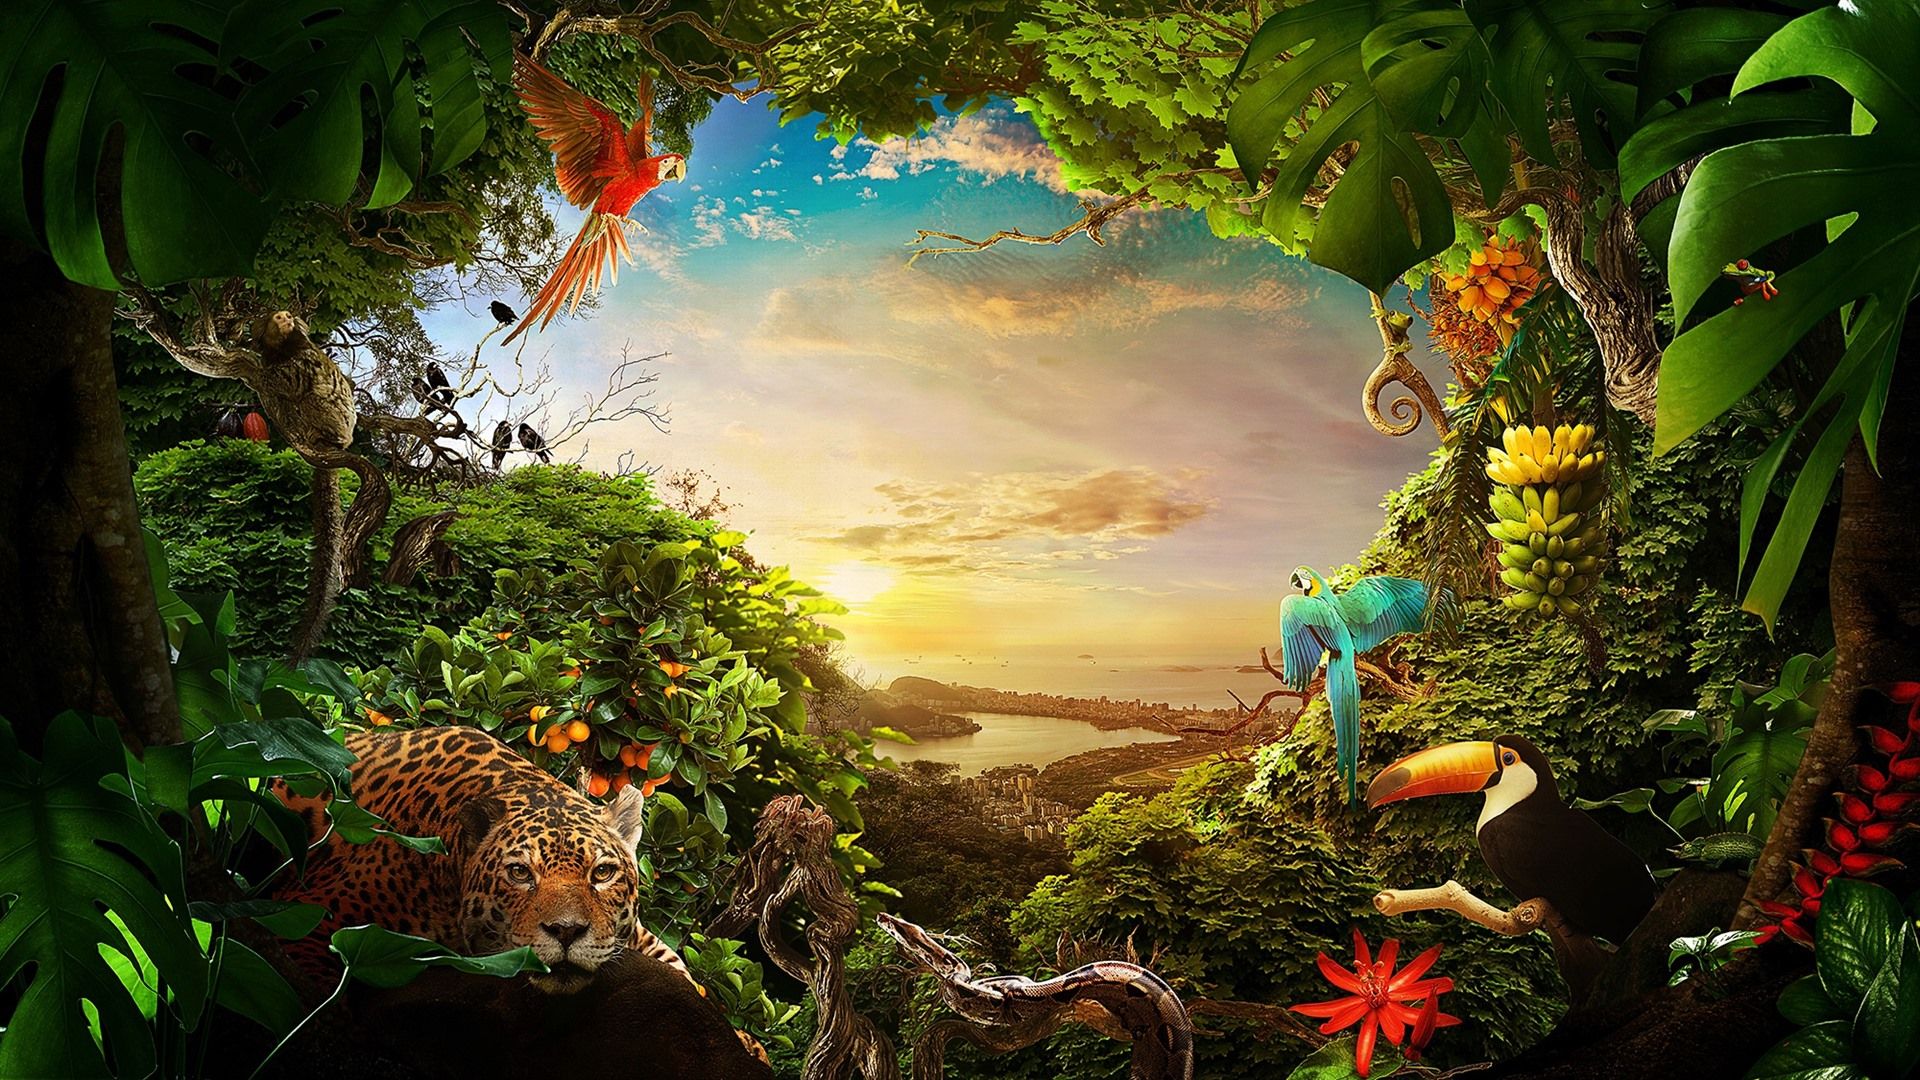 Dschungel Hintergrundbild 1920x1080. Dschungel, viele Tiere, Pflanzen, Stadt, Meer, Sonnenschein 1920x1080 Full HD 2K Hintergrundbilder, HD, Bild